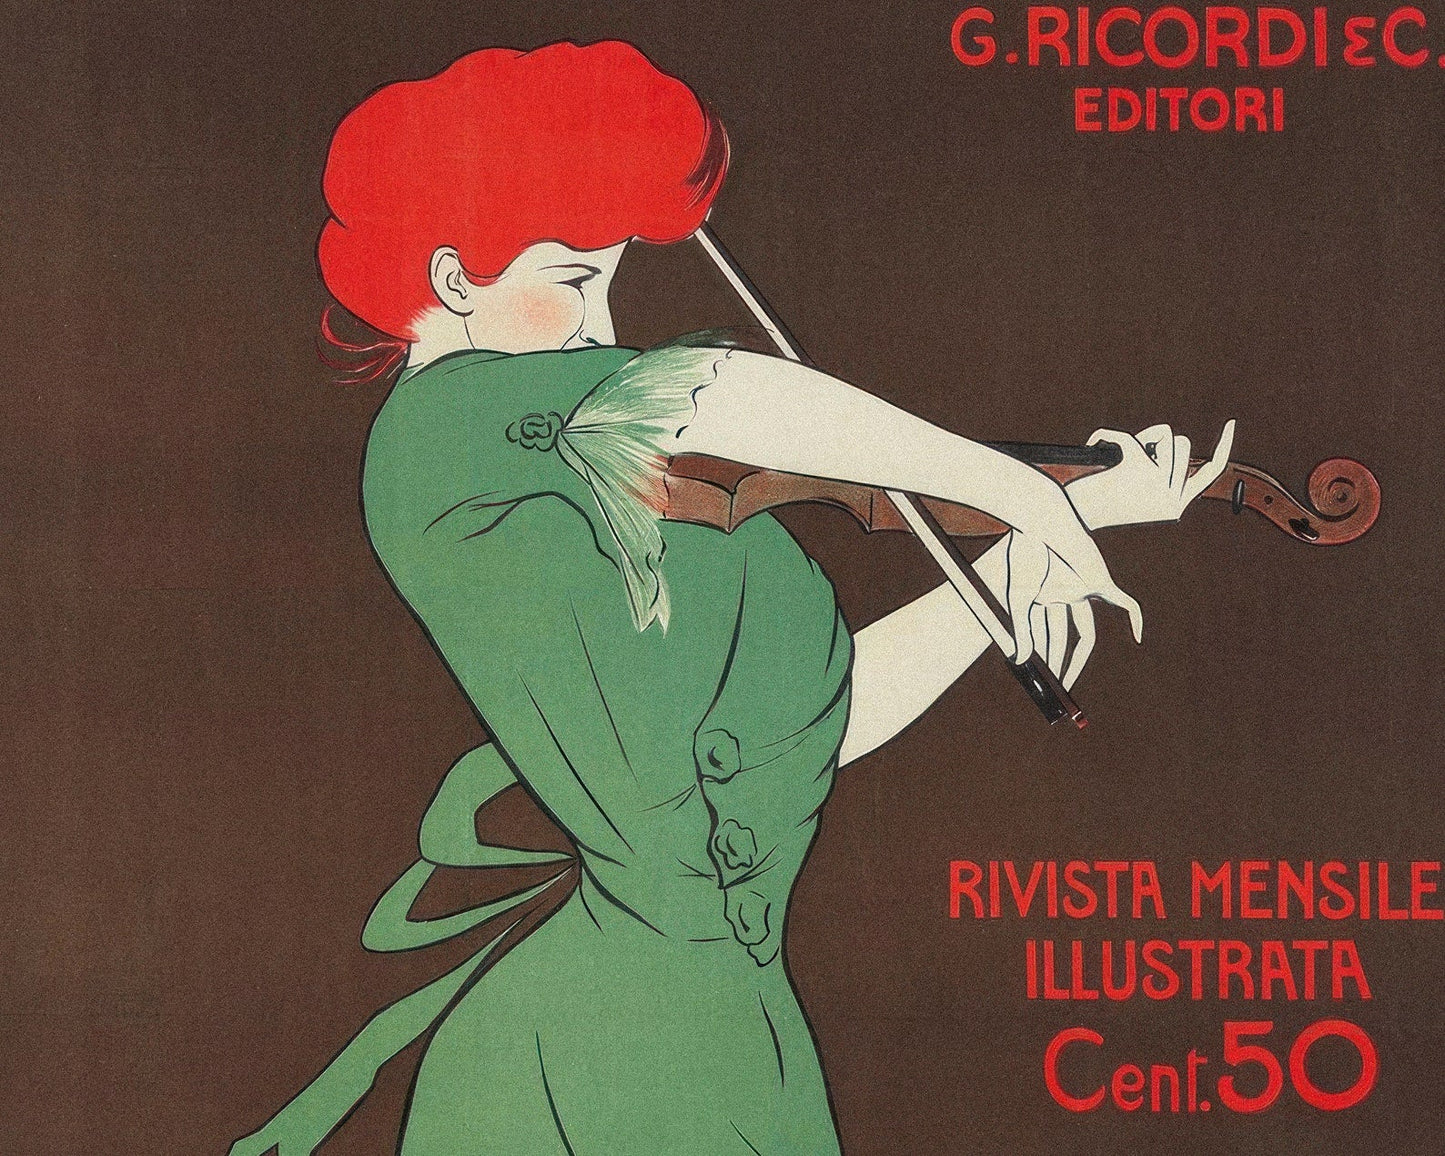 Leonetto Cappiello "Musica e Musicisti" (c.1914) - Mabon Gallery